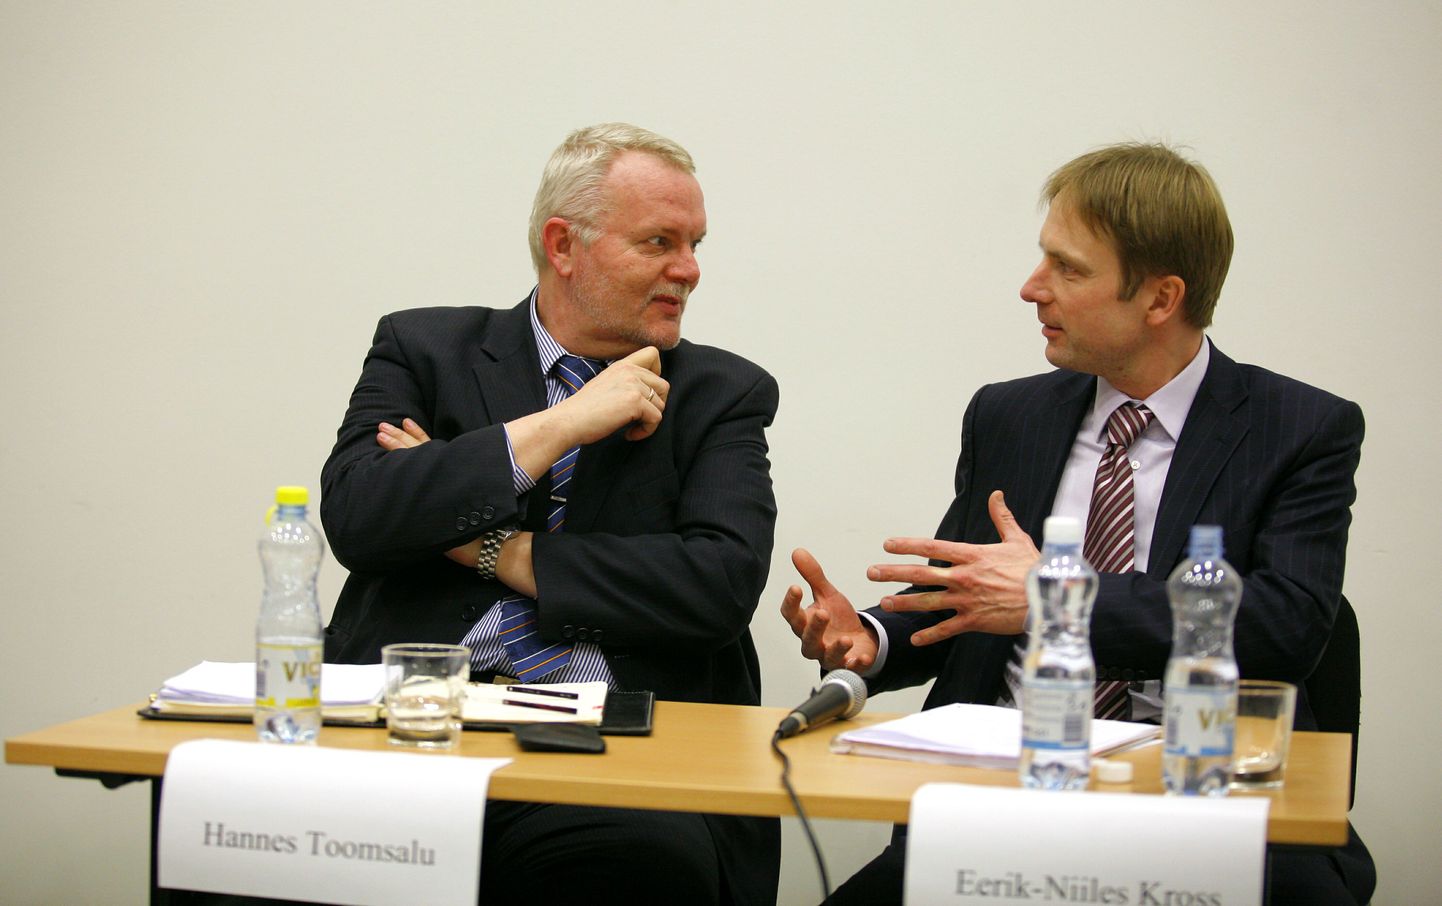 Hannes Toomsalu ja Eerik-Niiles Kross.